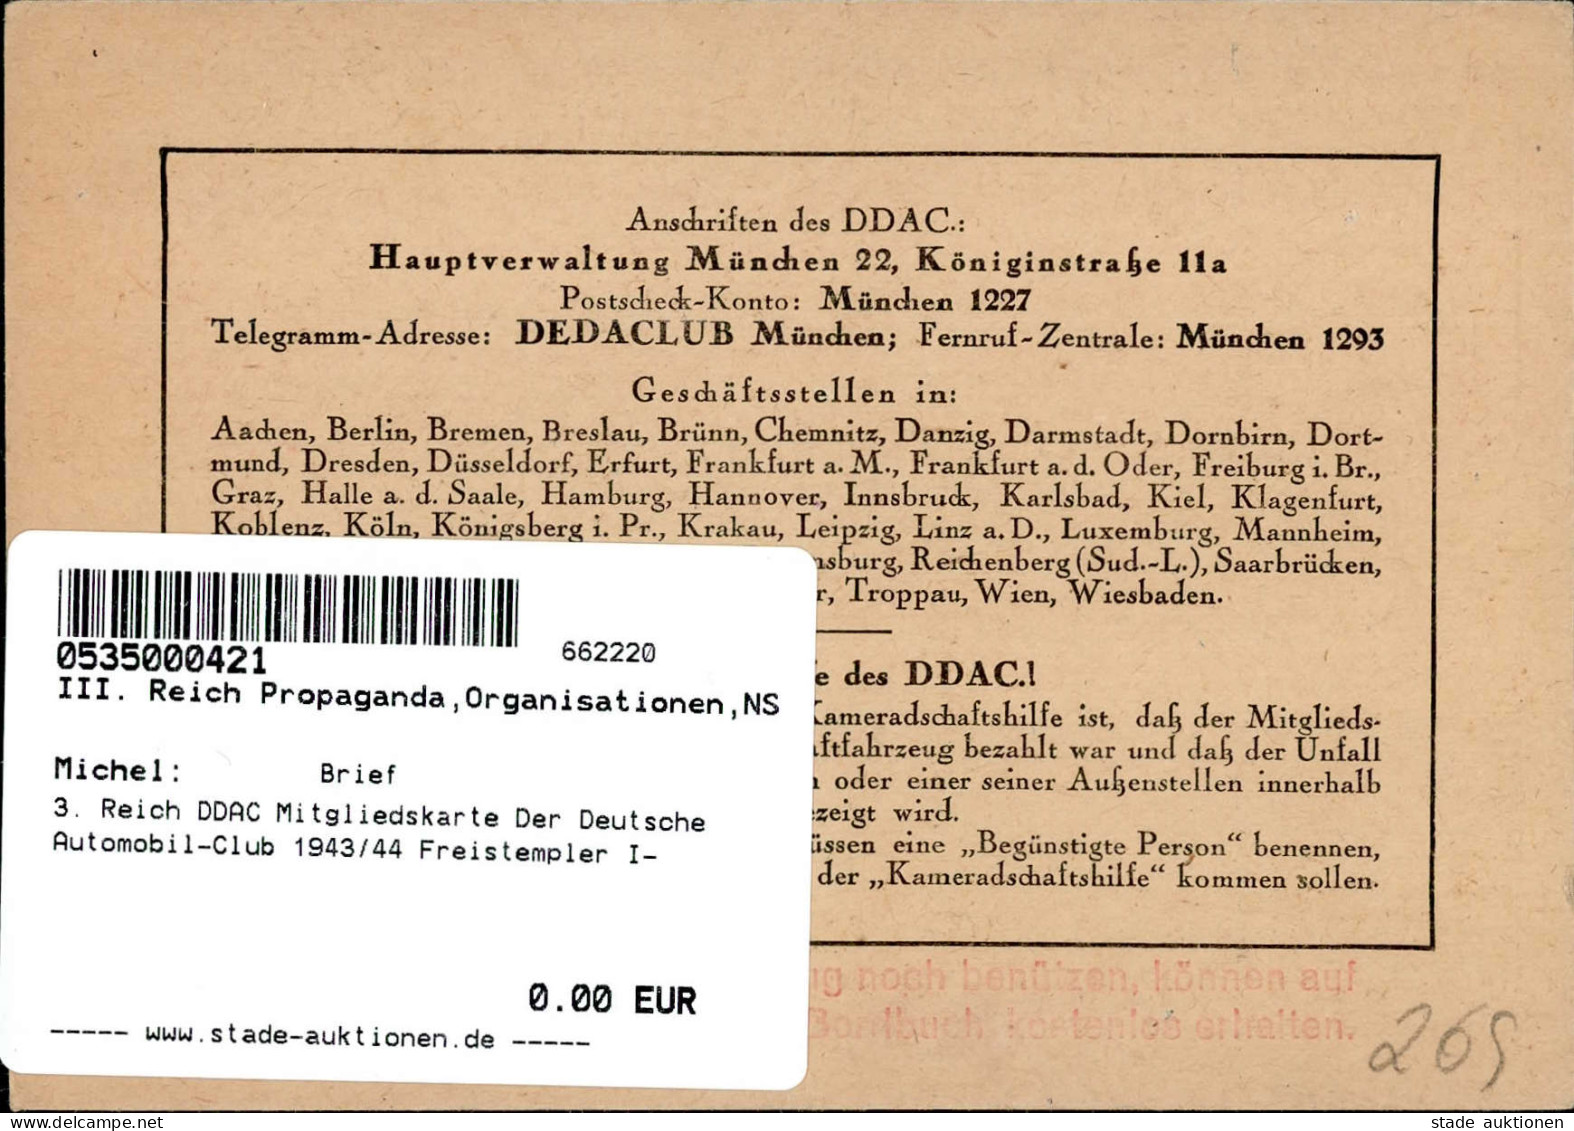 3. Reich DDAC Mitgliedskarte Der Deutsche Automobil-Club 1943/44 Freistempler I- - War 1939-45